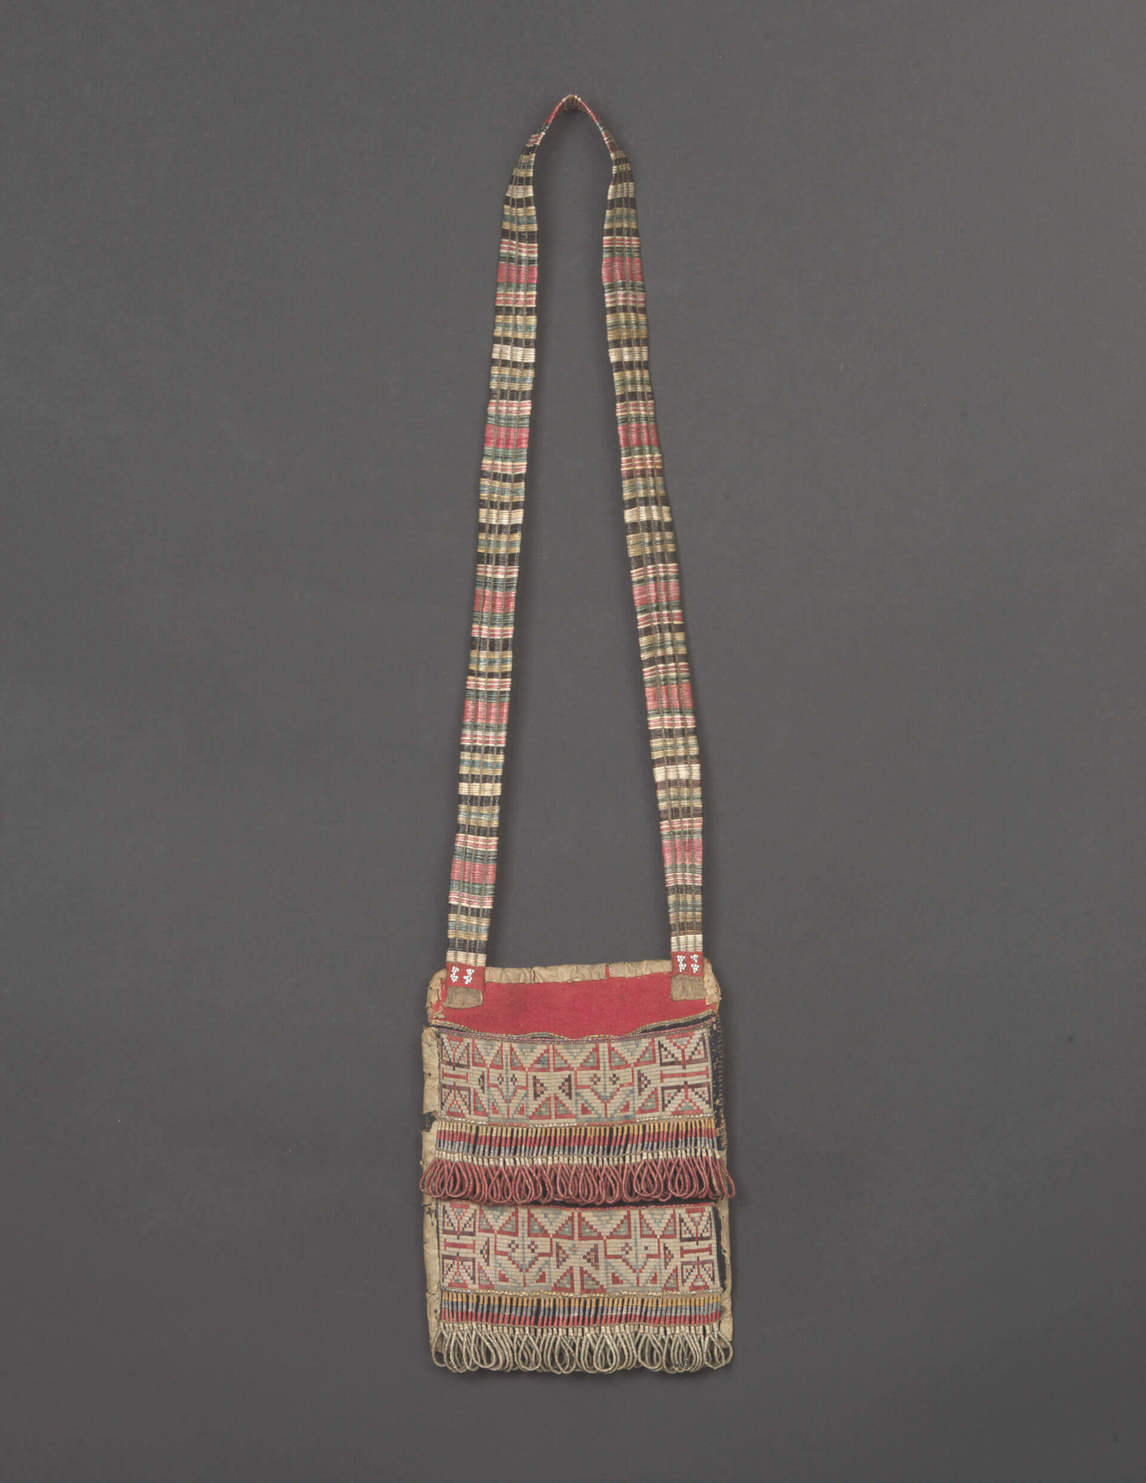 Art Canada Institute, Paul Kane, Photograph of shoulder bag, Cree or Metis, 1840s